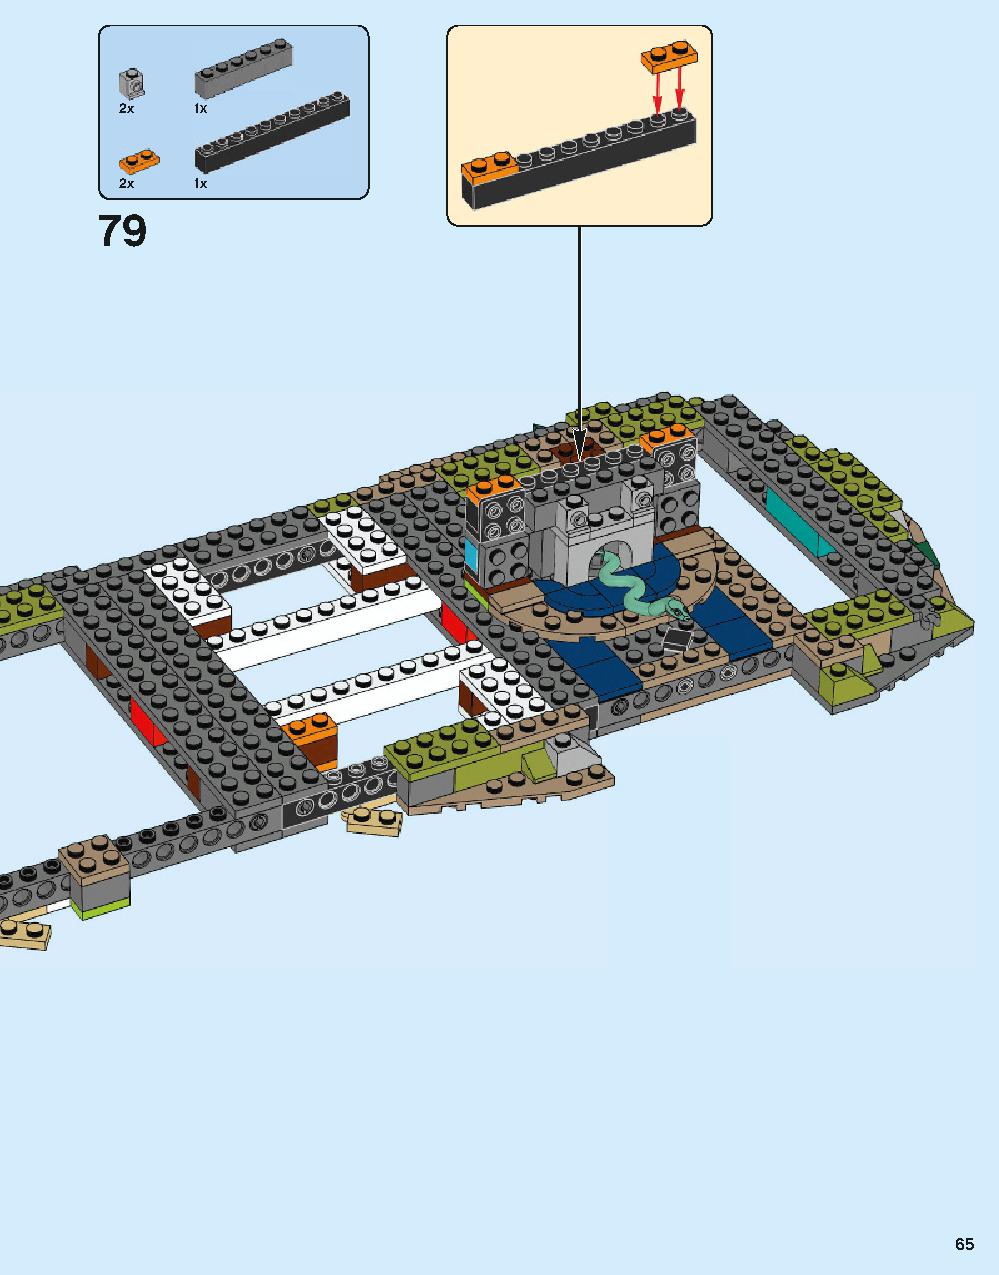 ホグワーツ城 71043 レゴの商品情報 レゴの説明書・組立方法 65 page